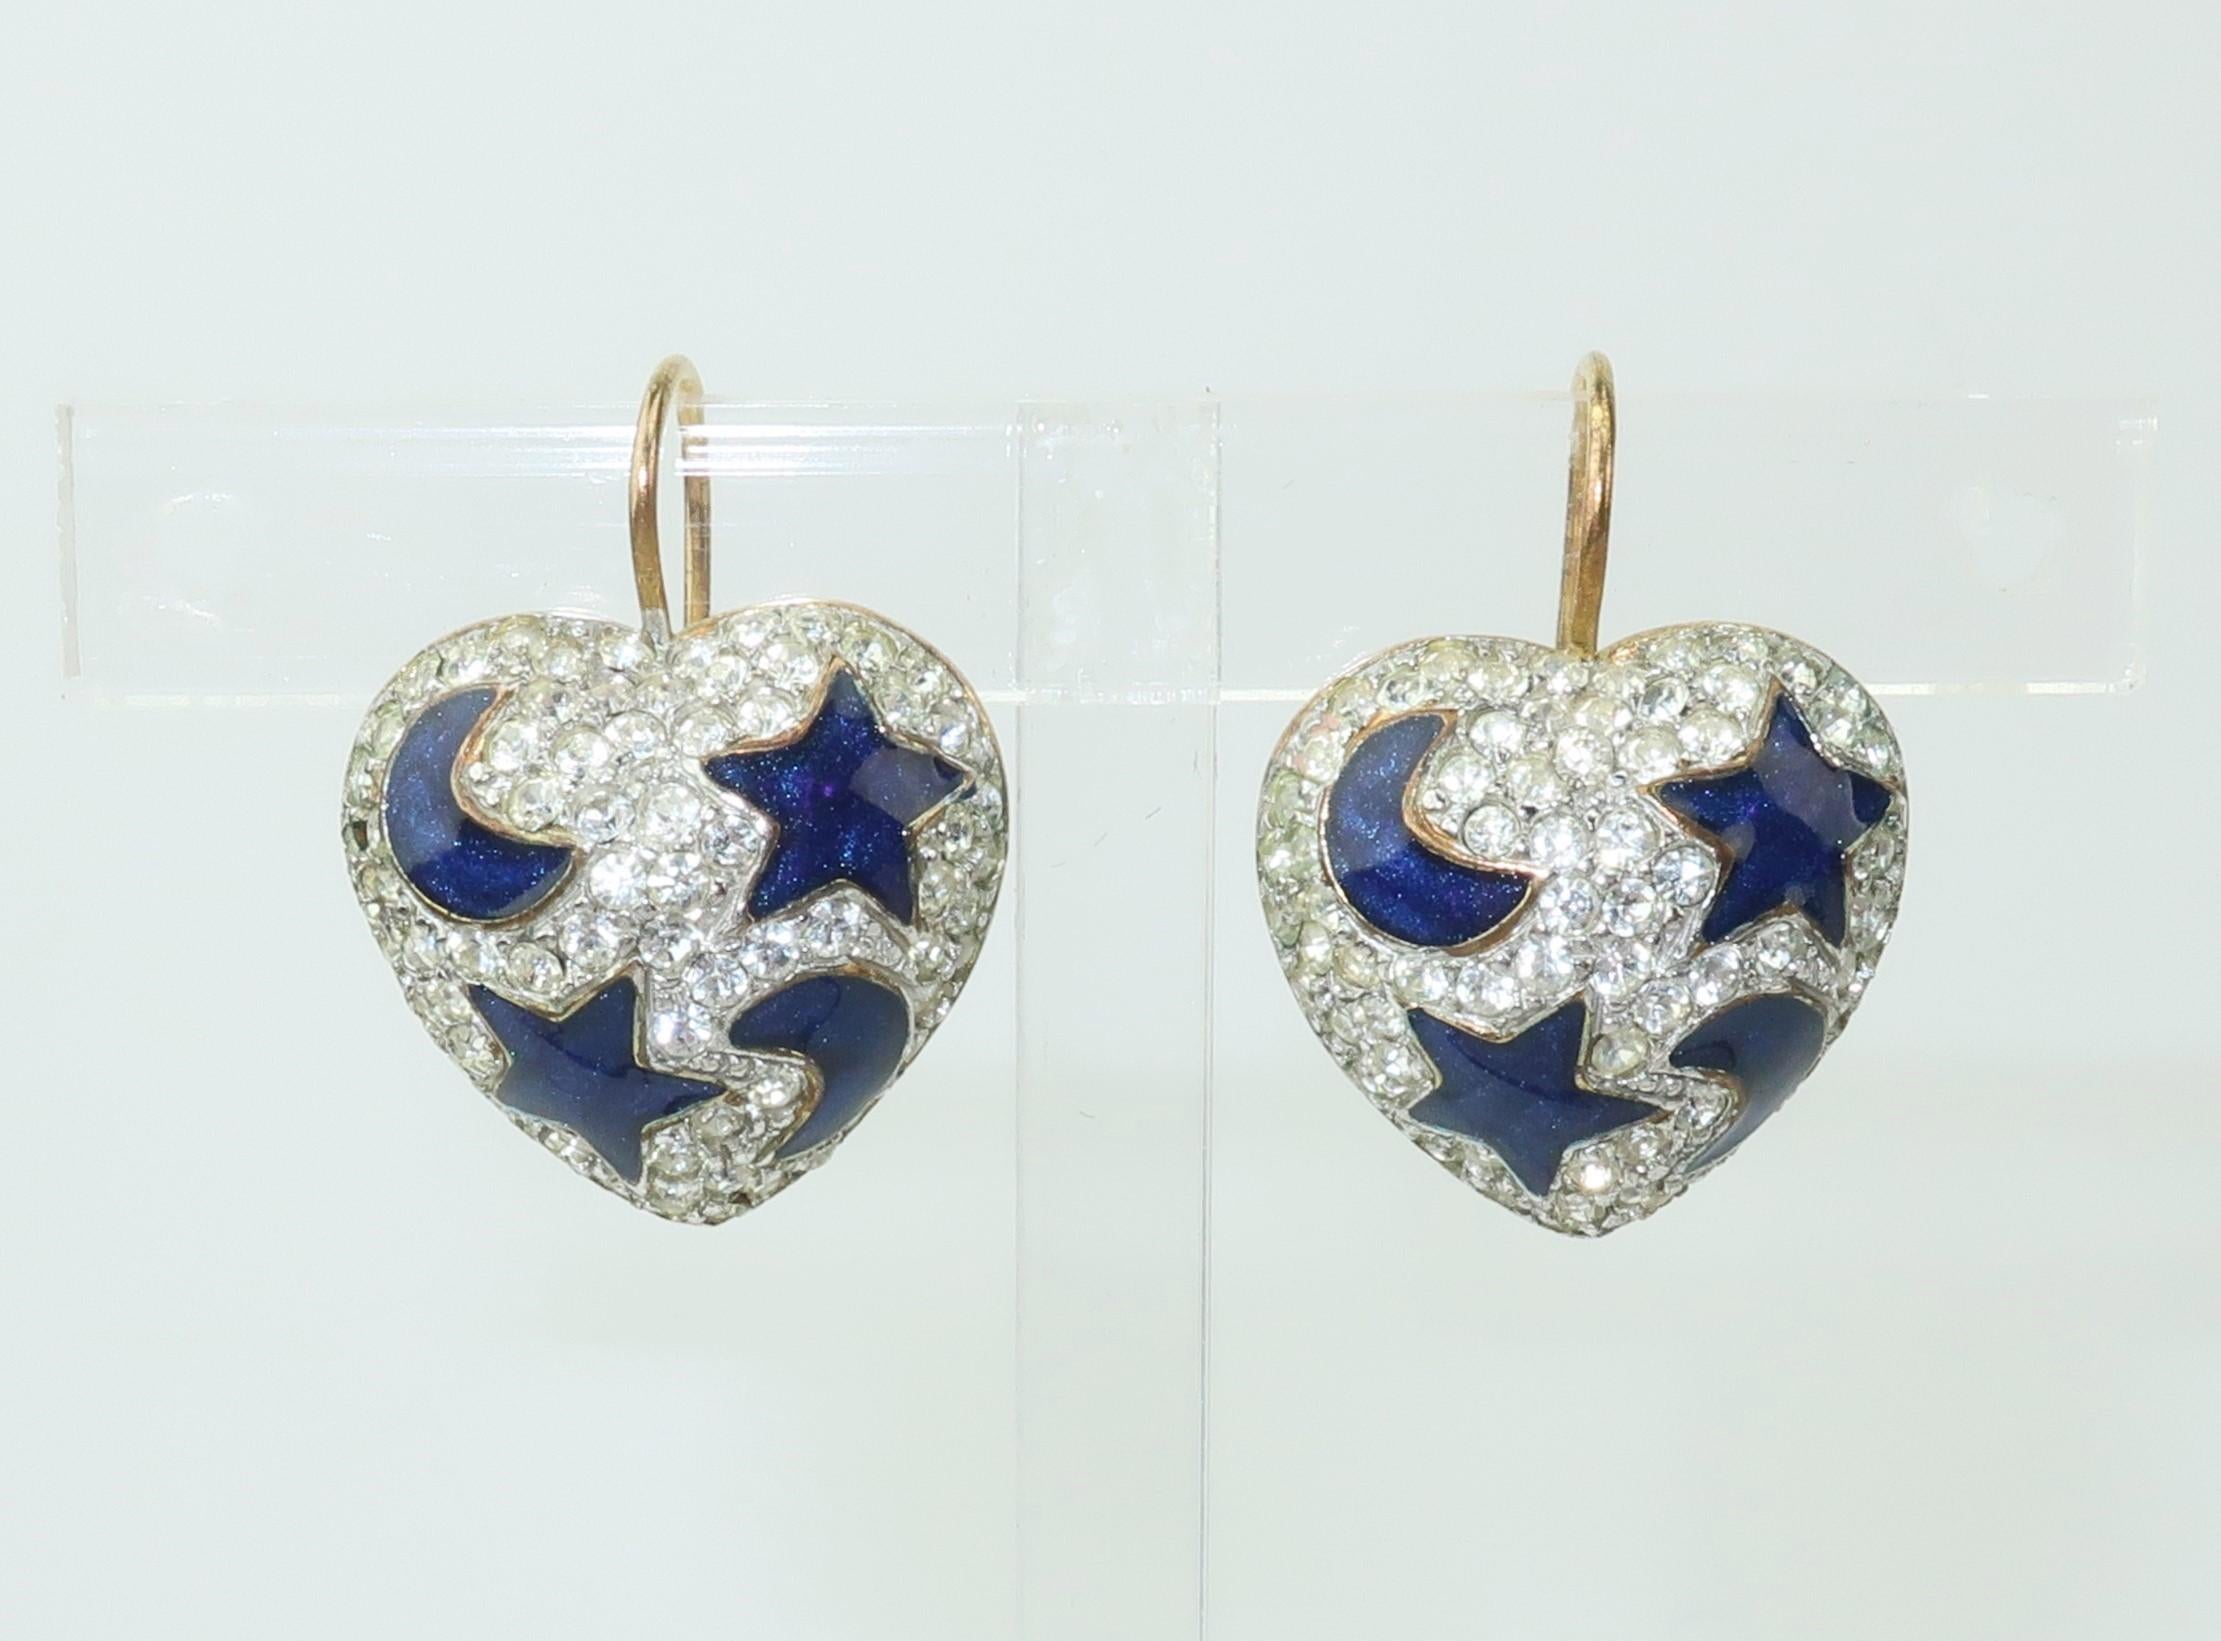 Swarovski Heart Earrings With Blue Enamel Stars & Moon 2